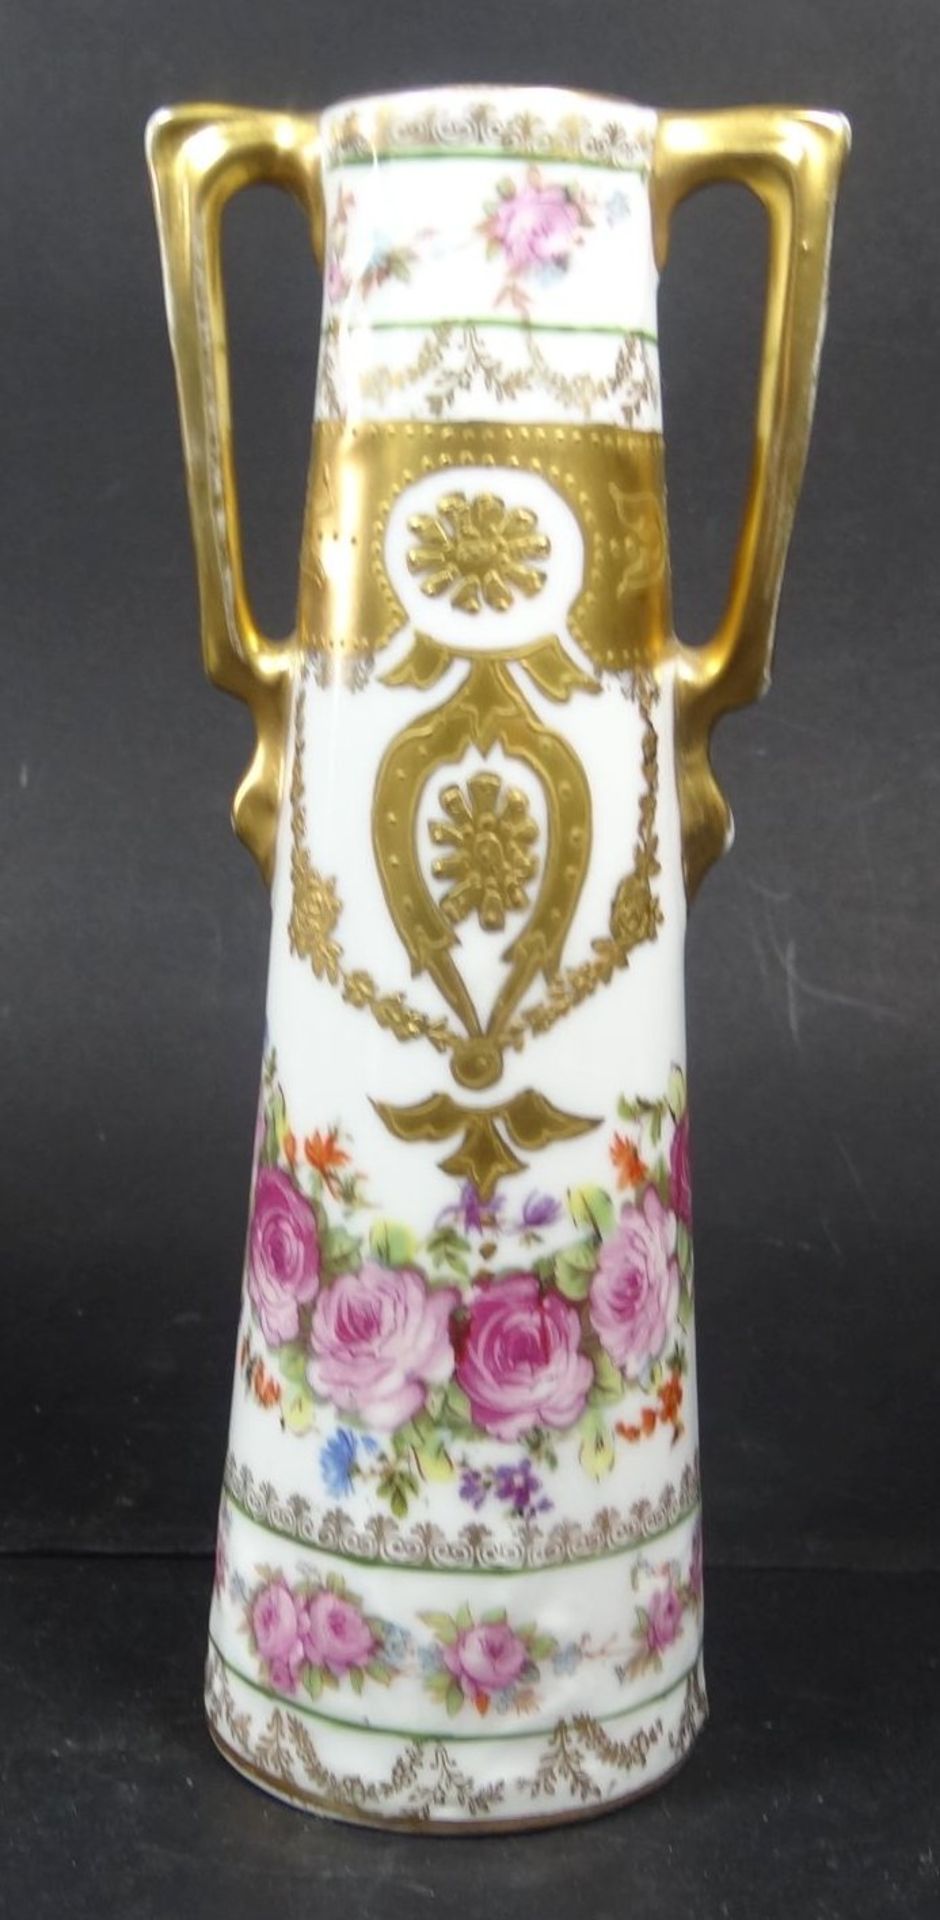 Jugendstil-Henkelvase "Sevres" mit Gold-und Rosendekor, H-16 cm, leicht berieben